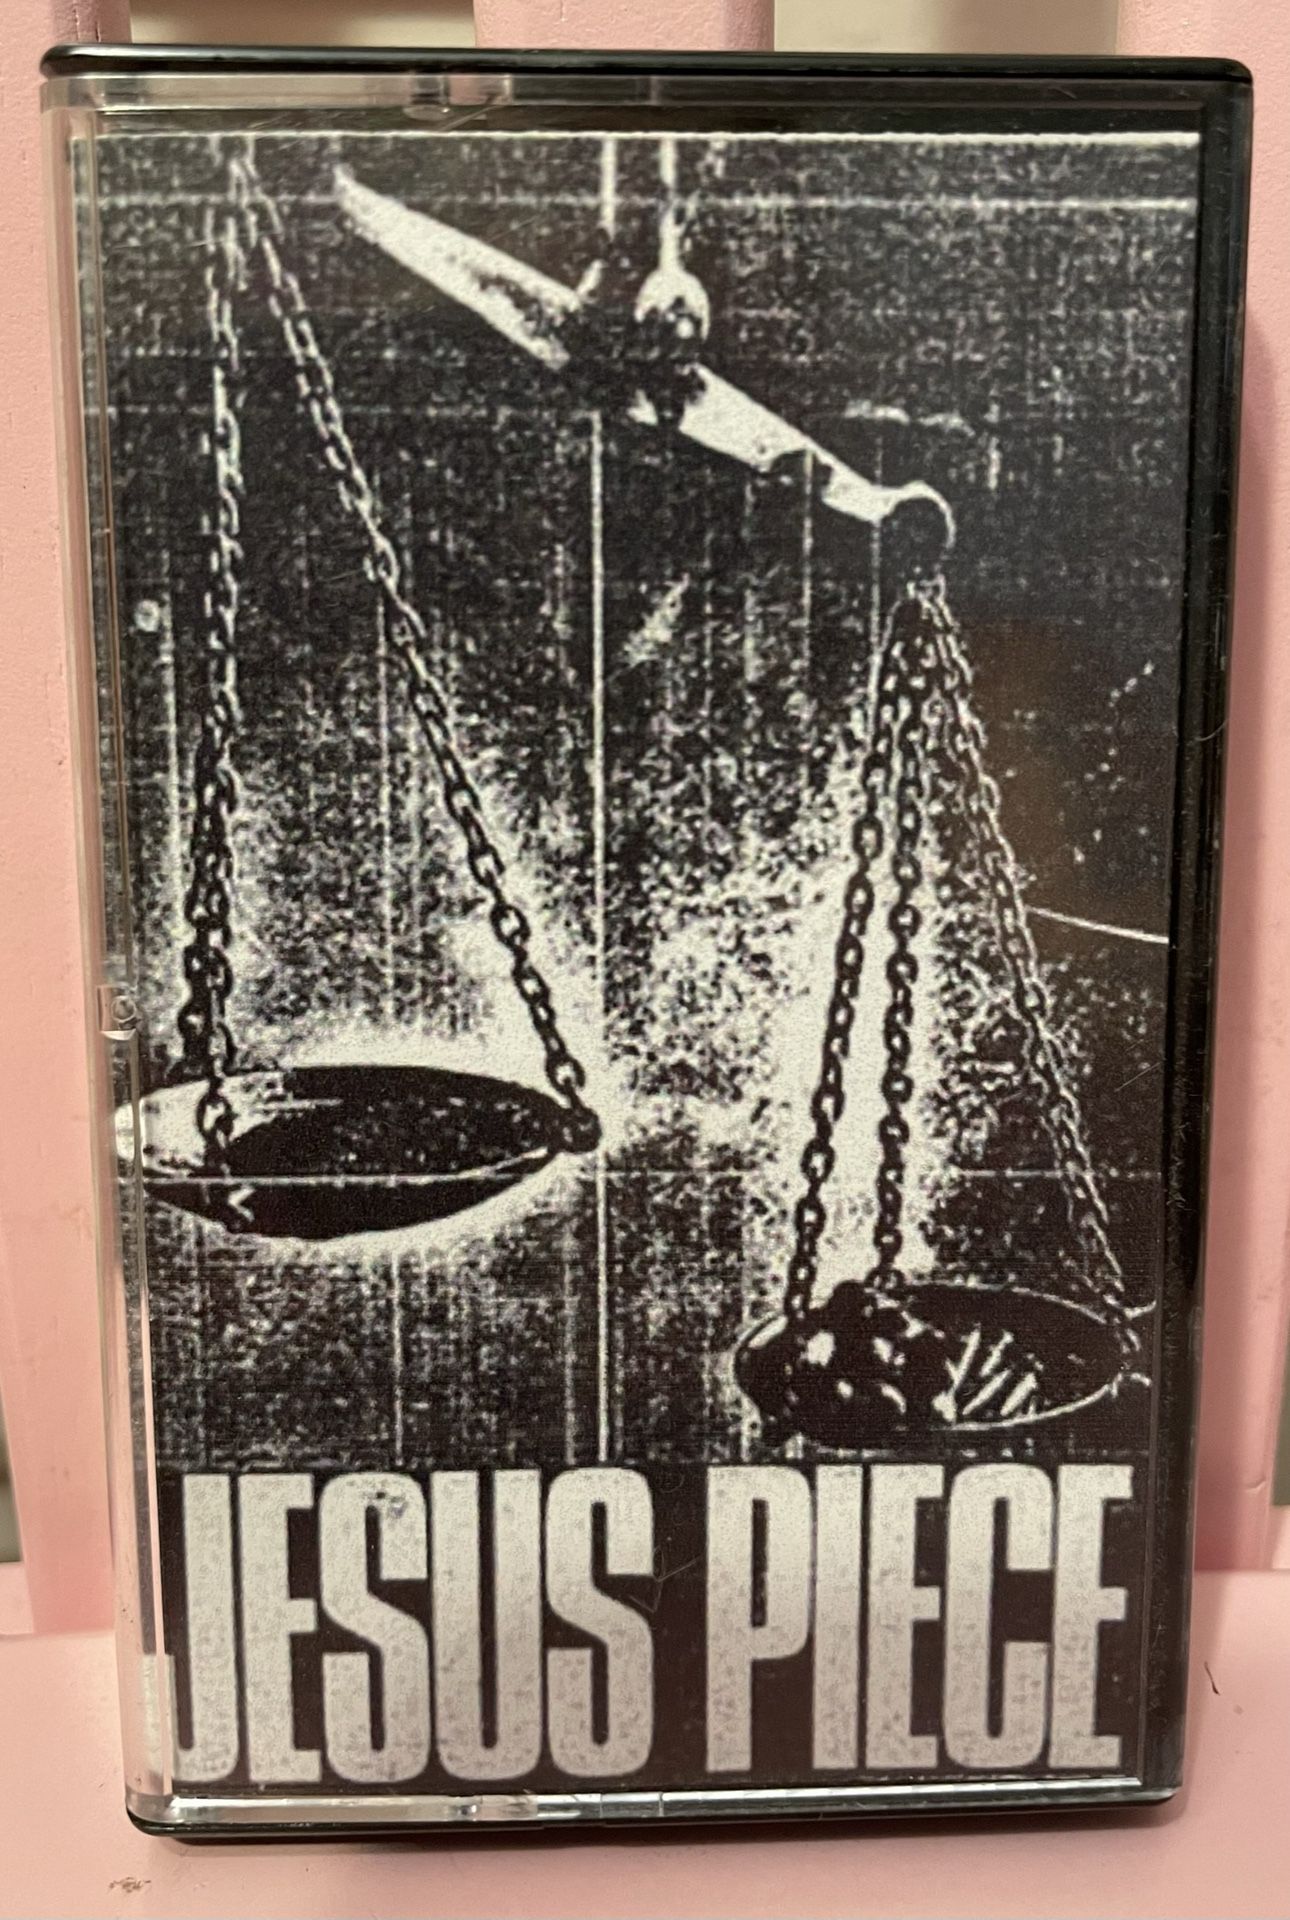 Jesus Piece - Jesus Piece EP cassette tape